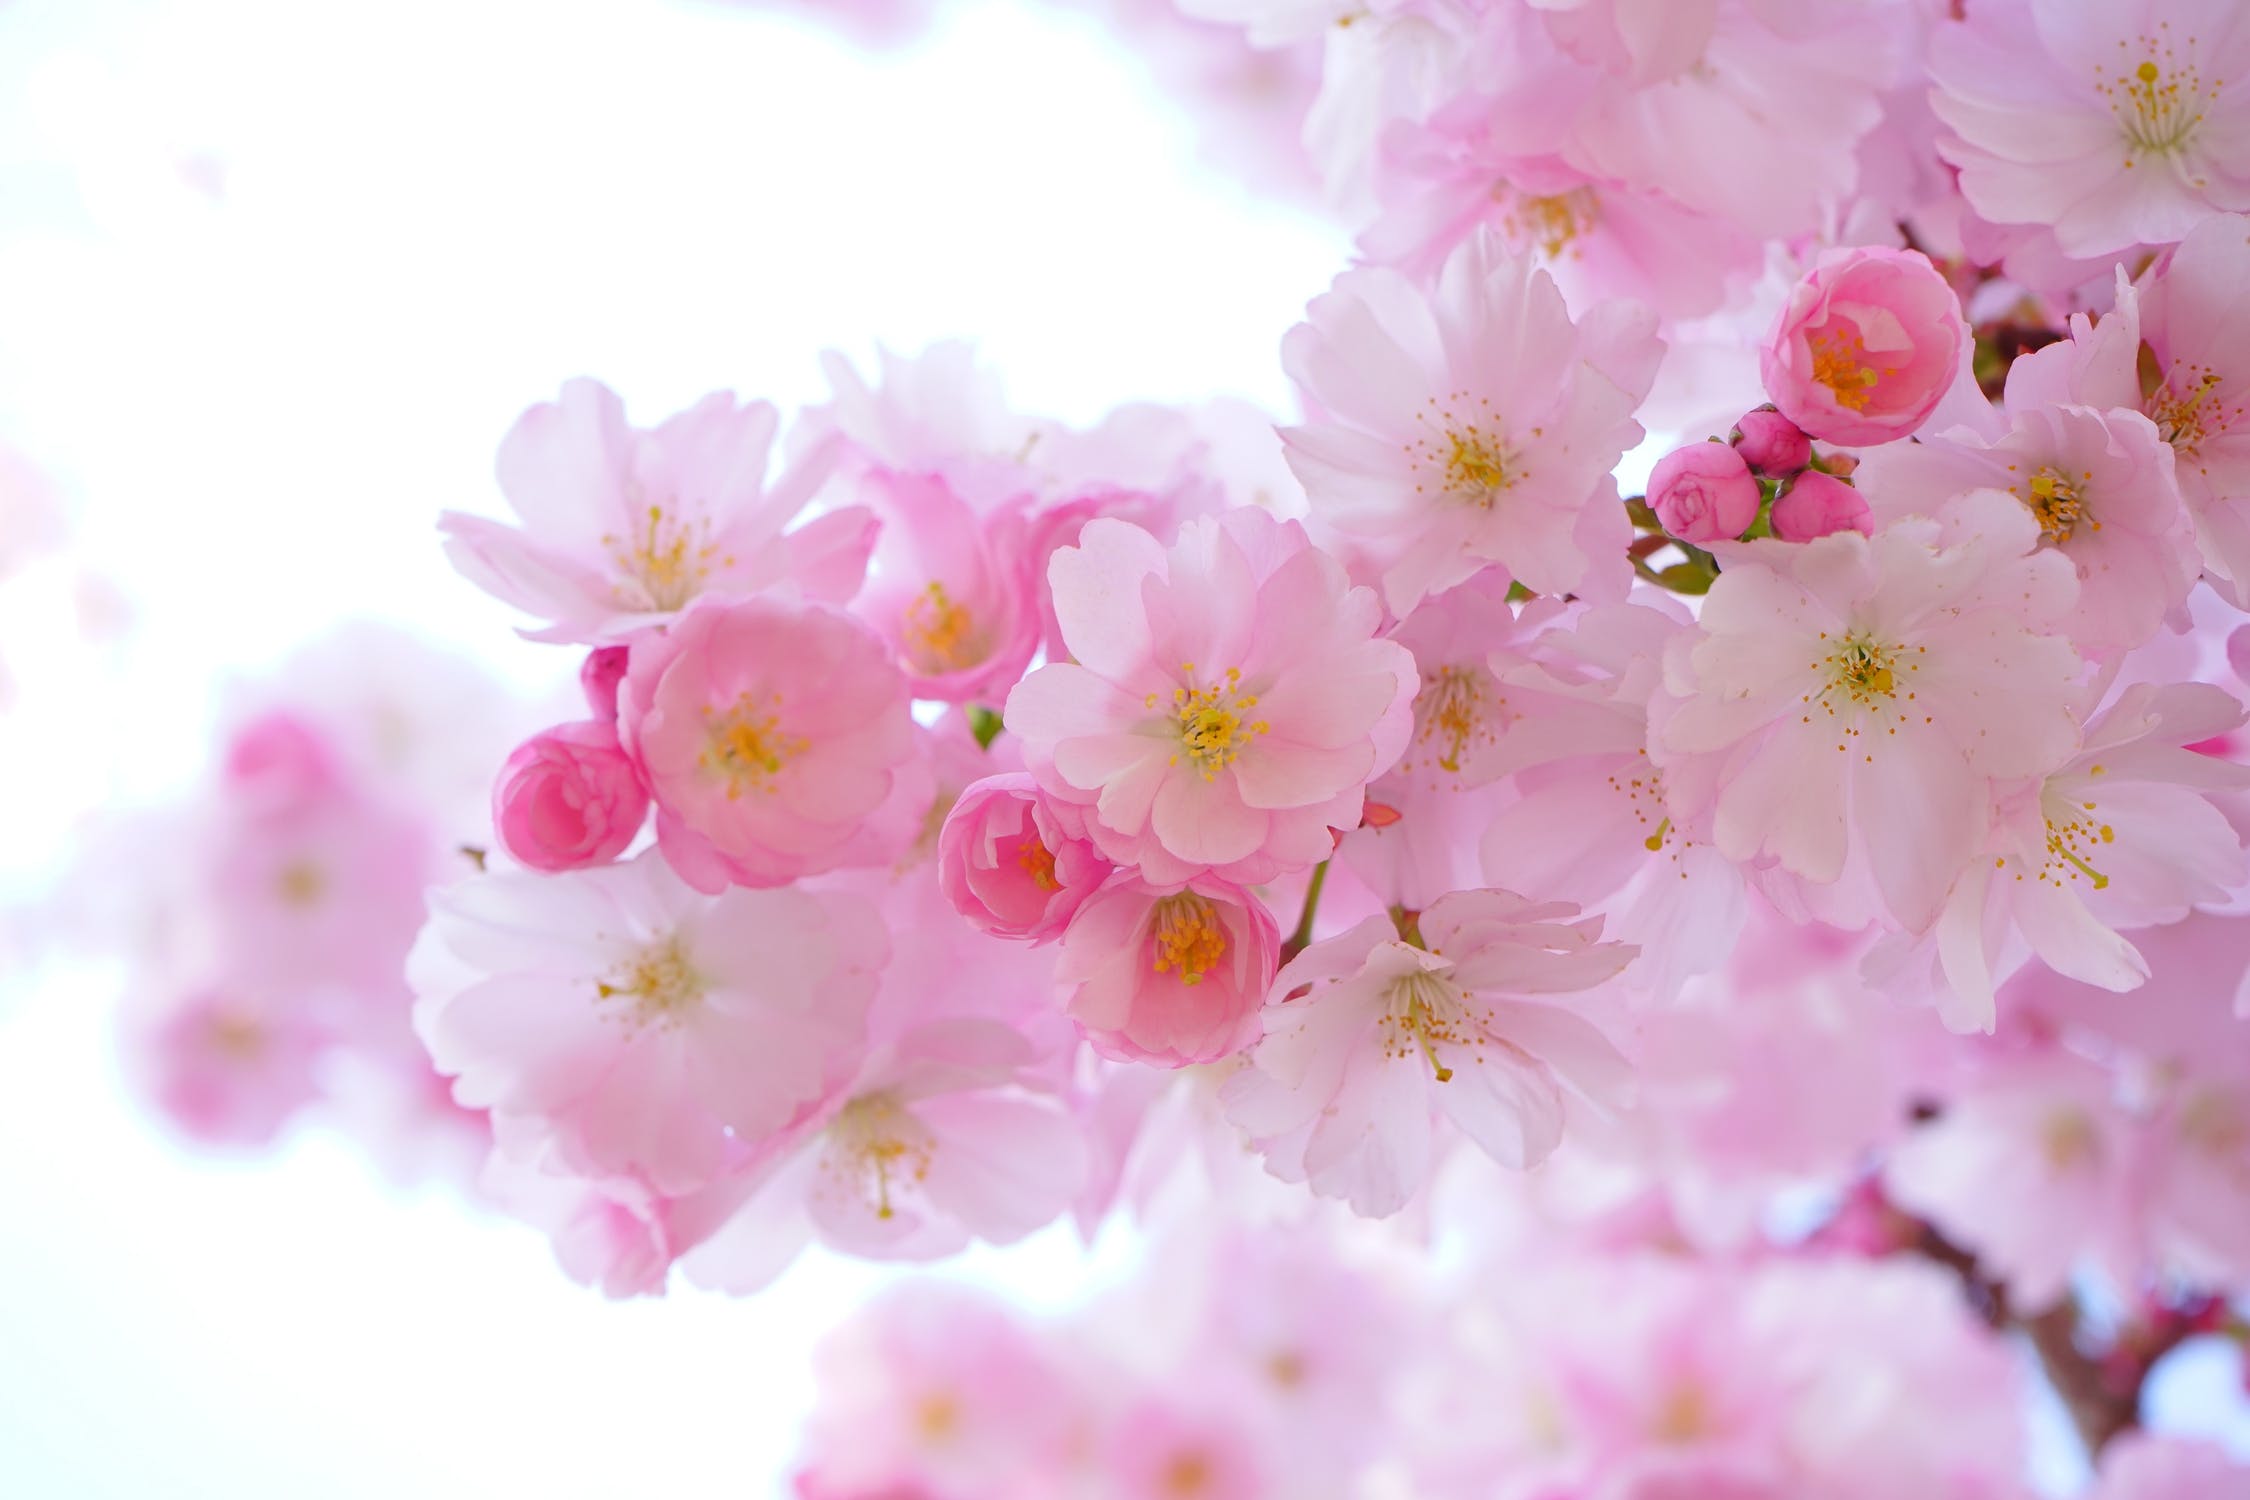 Cherry Blossom Festival 2019